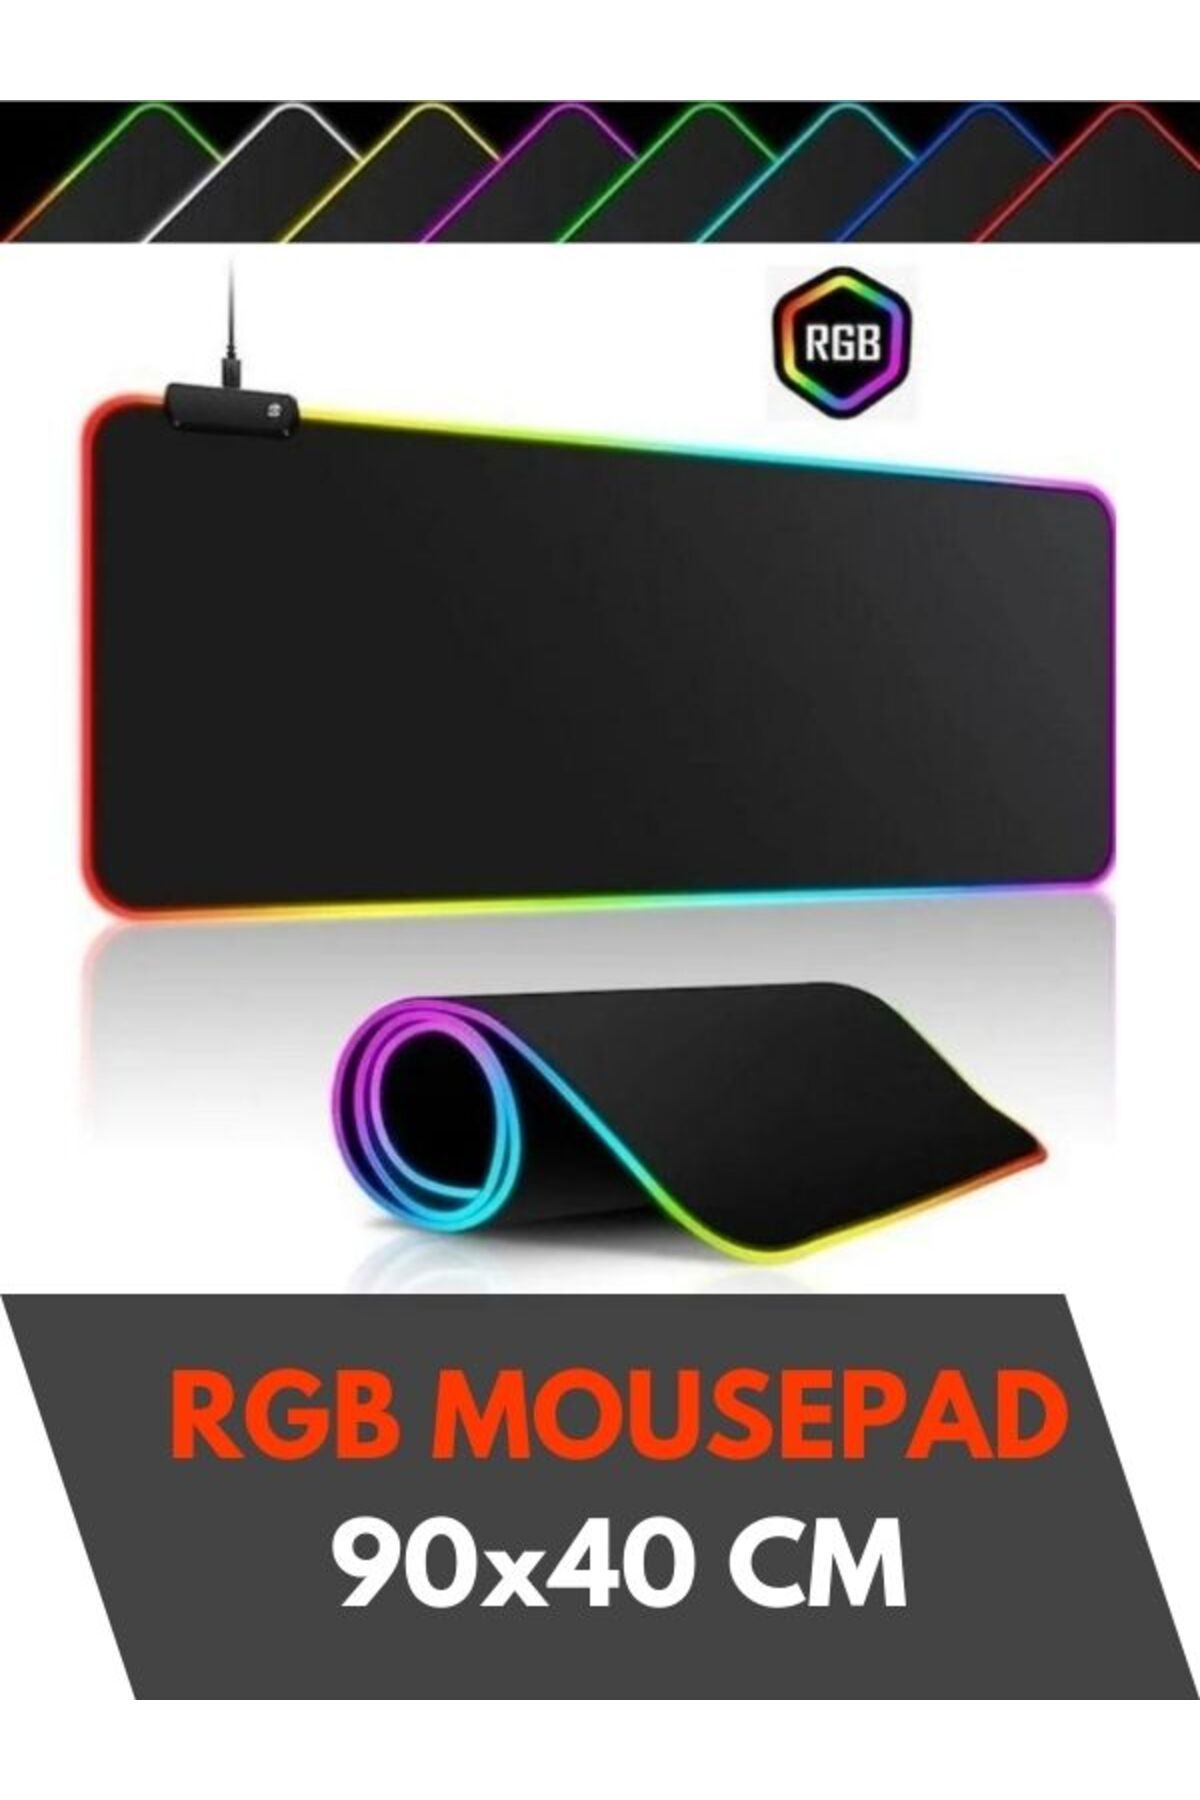 Sarftech 90x40 Rgb Mouse Pad Led Işıklı Baskısız Siyah Renk Gaming Mousepet 90x40cm